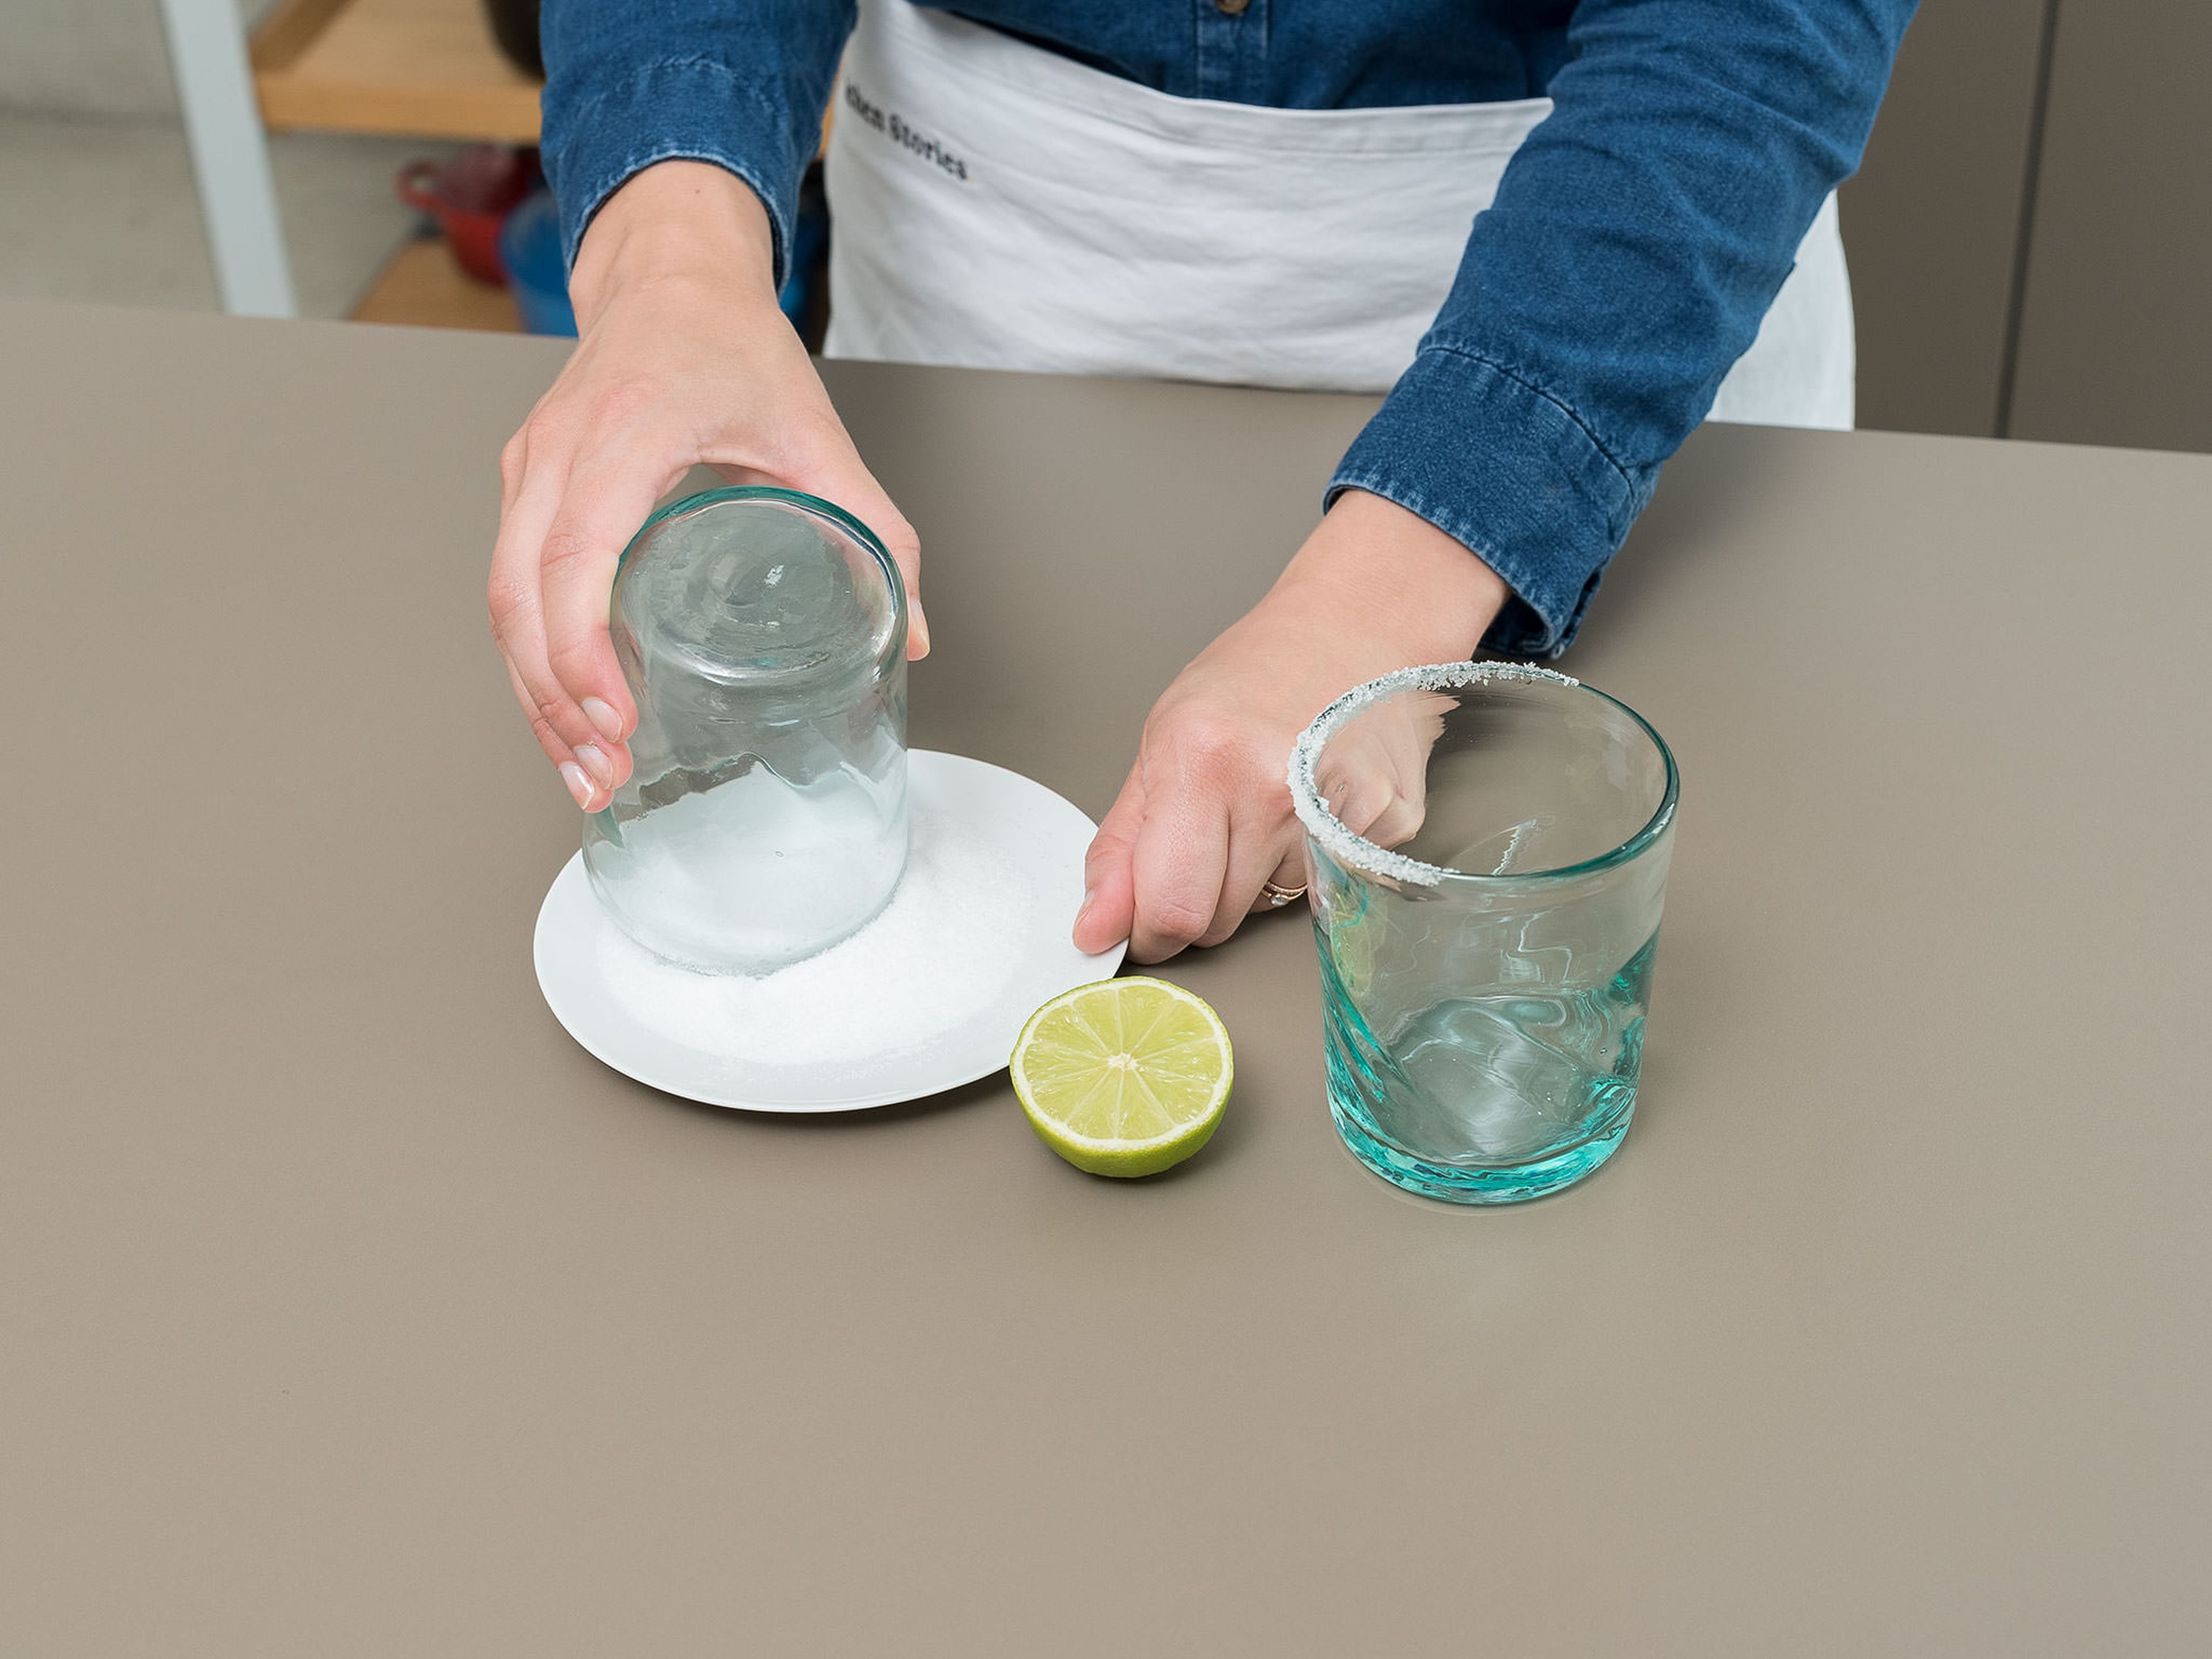 Salz auf einen flachen Teller geben. Limette halbieren und damit um den oberen Glasrand fahren, um ihn zu befeuchten. Glasrand in Salz tunken. Gläser beiseitestellen.